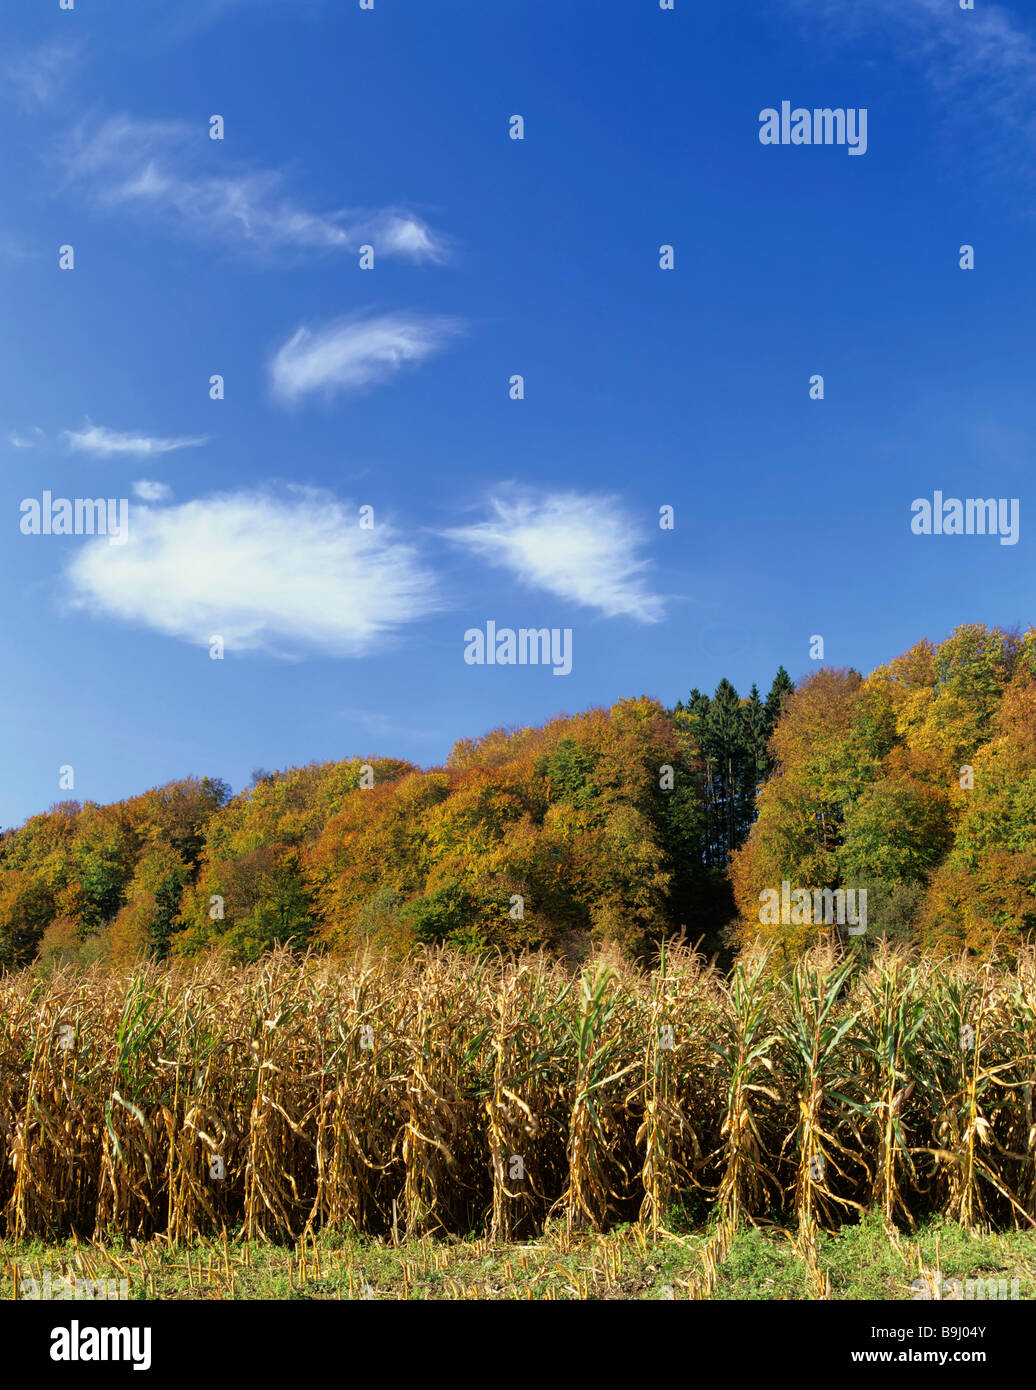 Le maïs (Zea mays), champ de maïs, l'automne, ciel bleu, nuages de foehn Banque D'Images